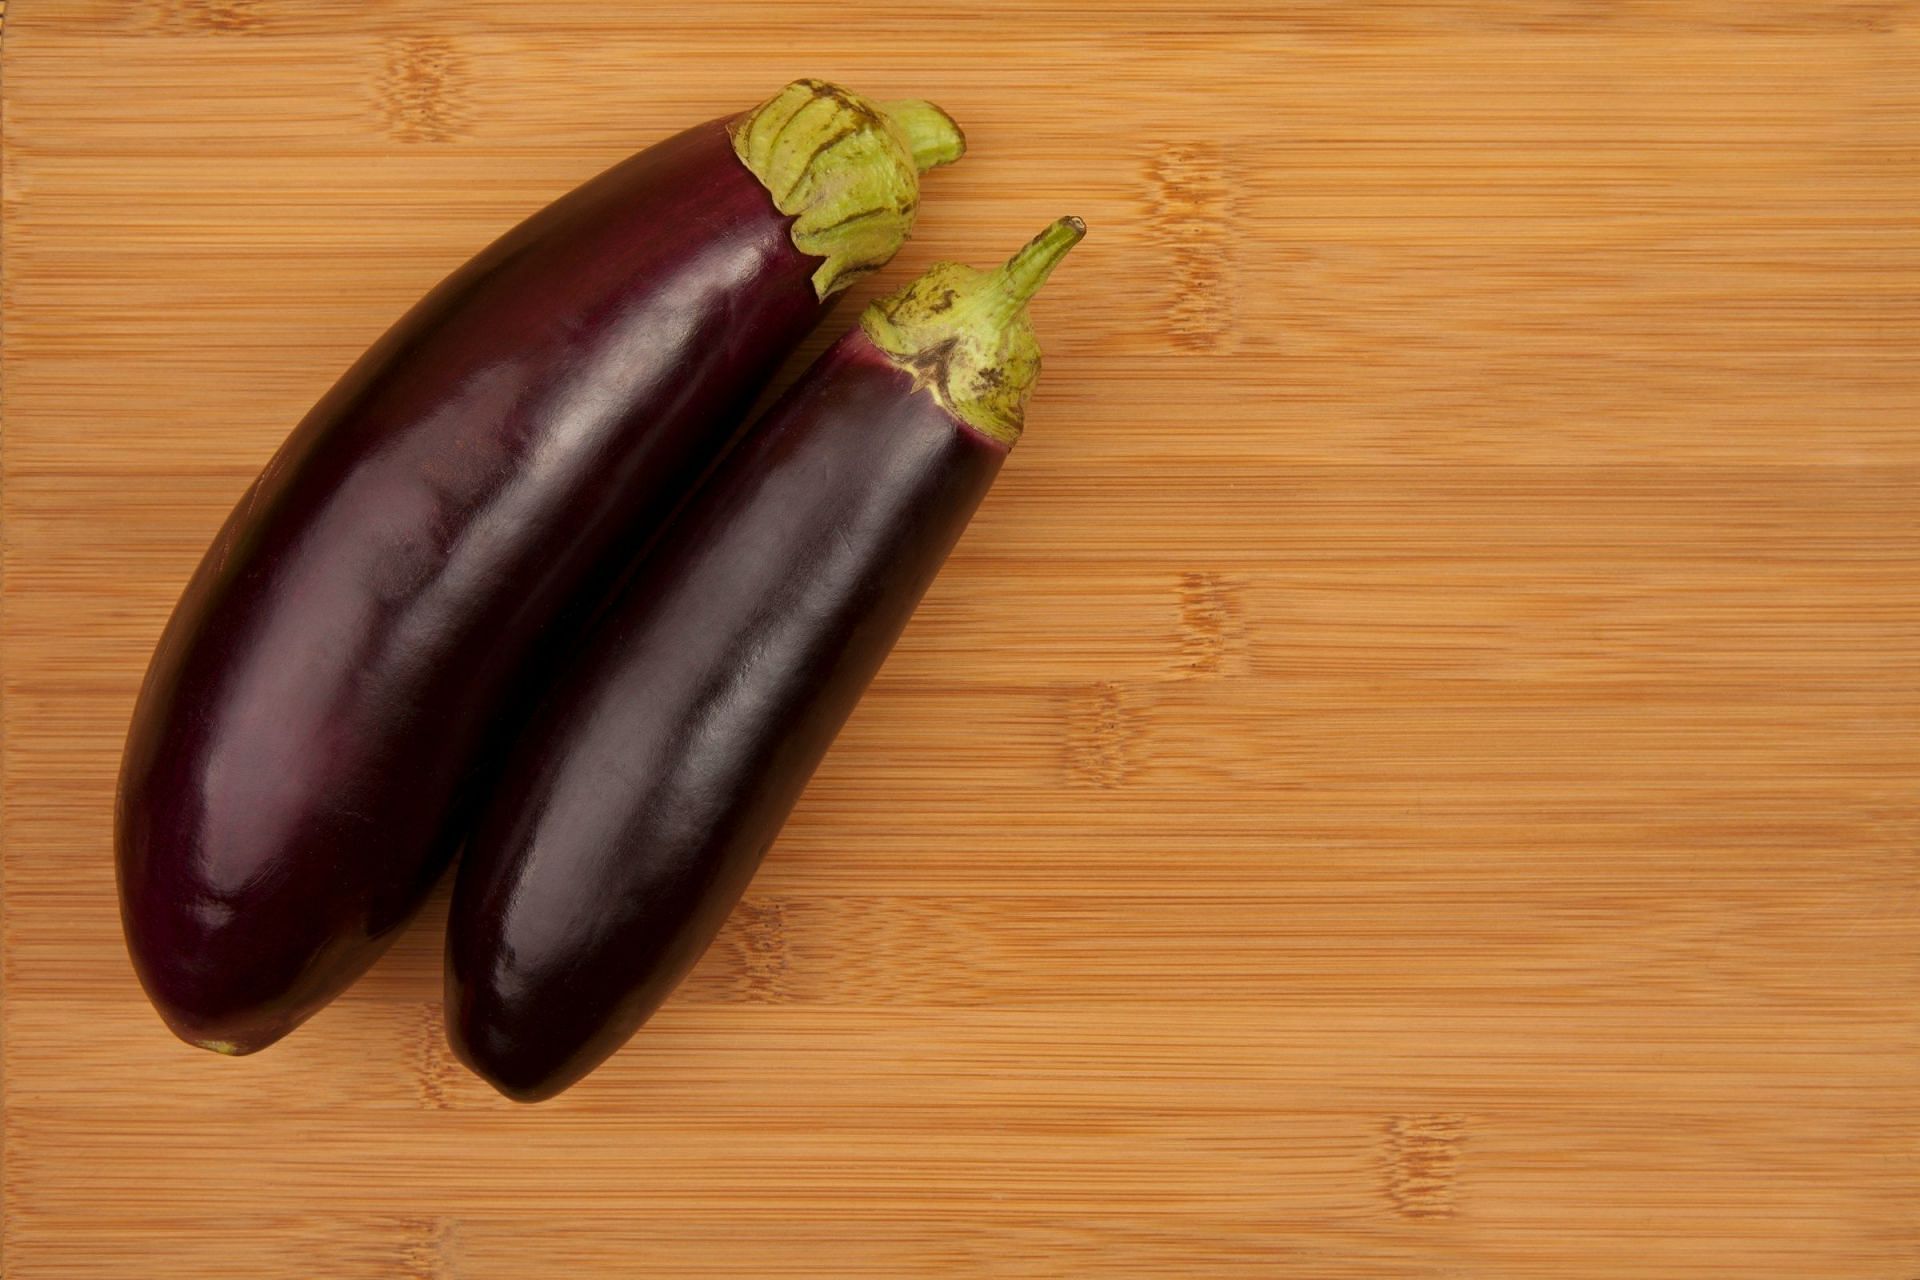 Eggplant health benefits (Image via Unsplash/Onder Ortel)